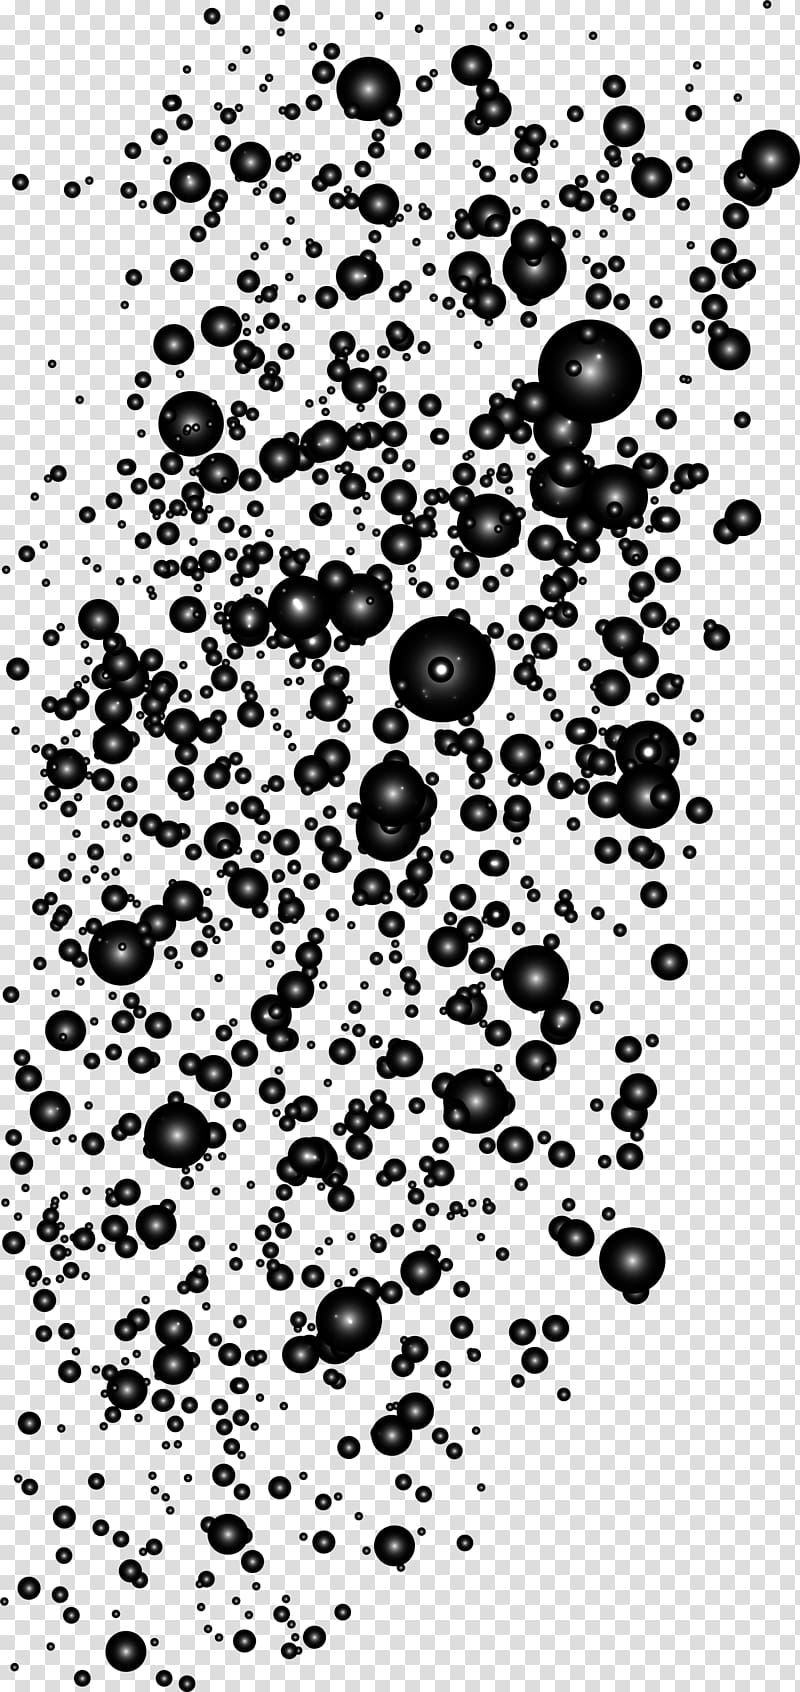 Dream Bubble Light Black and white, Black dream bubble transparent background PNG clipart